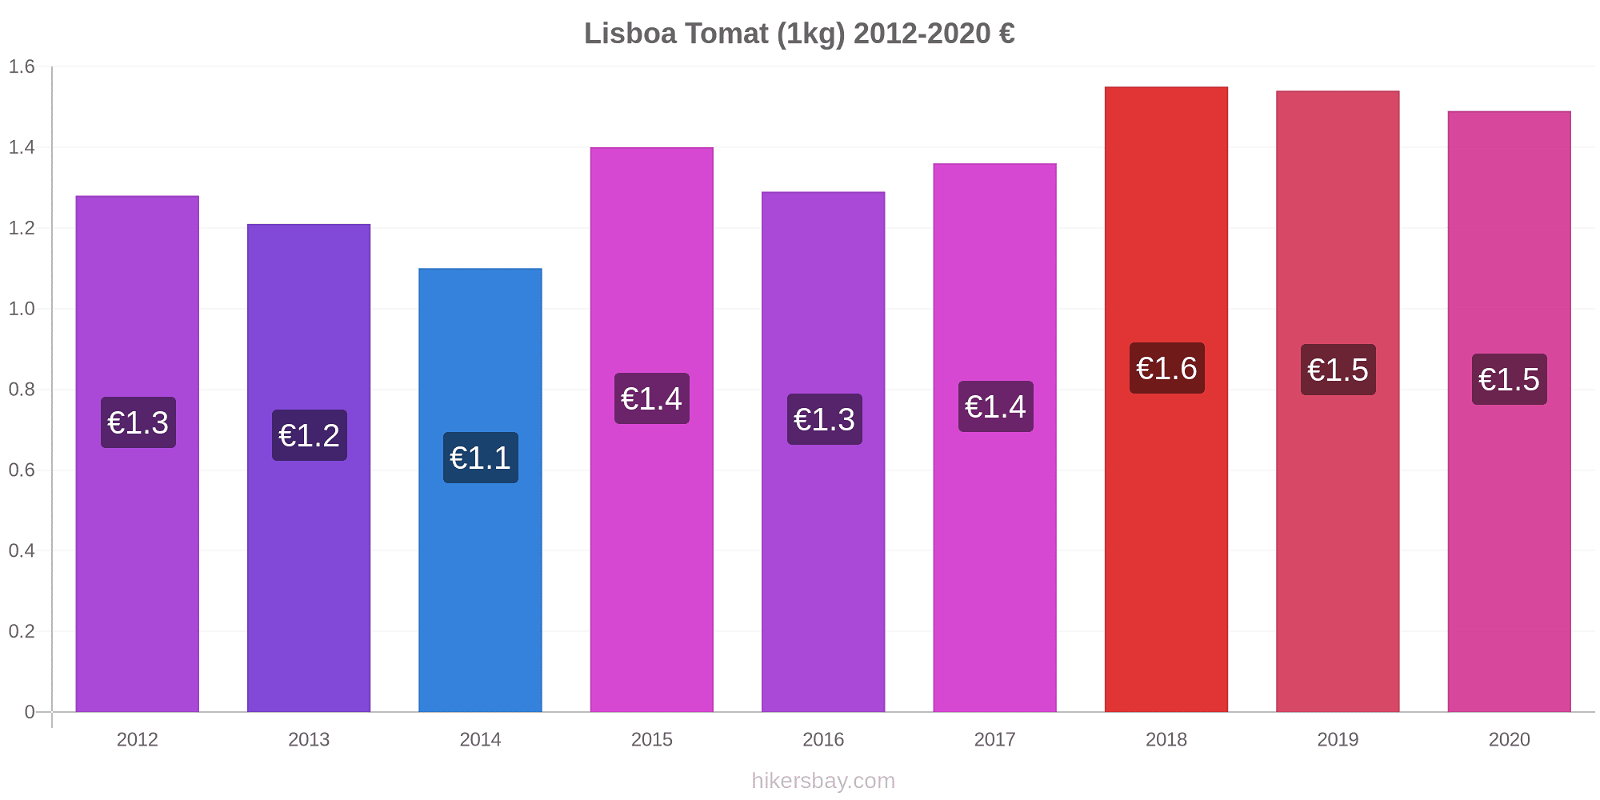 Lisboa perubahan harga Tomat (1kg) hikersbay.com